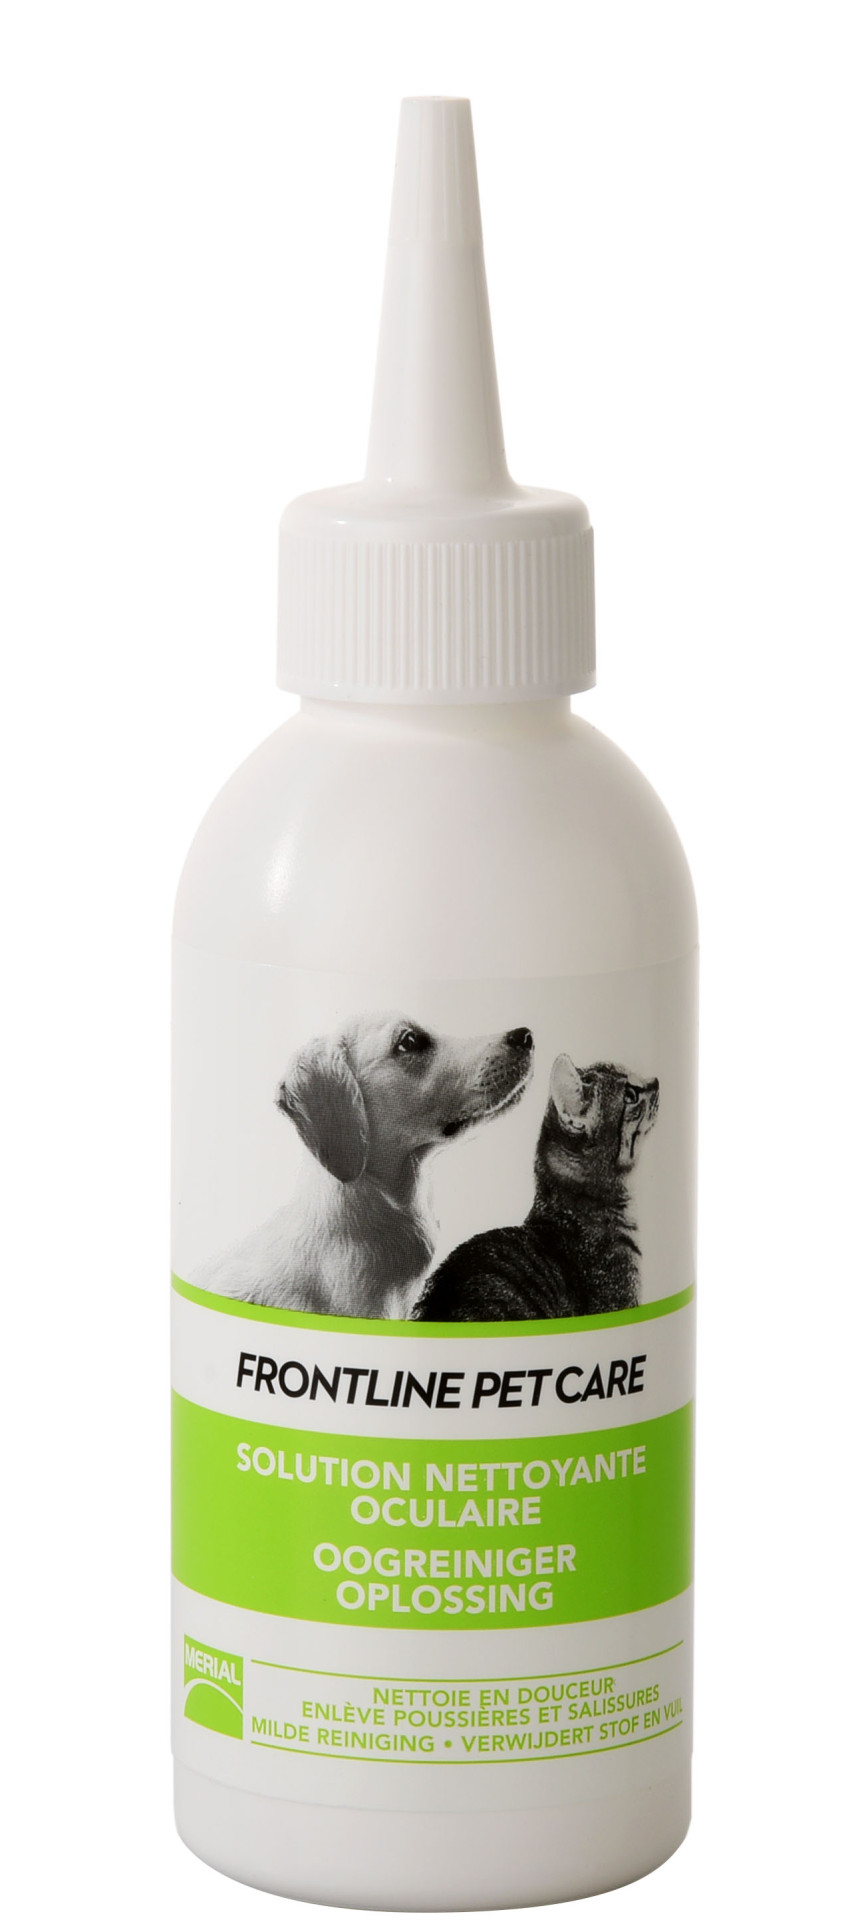 Frontline Pet Care oogreiniger oplossing 125 ml